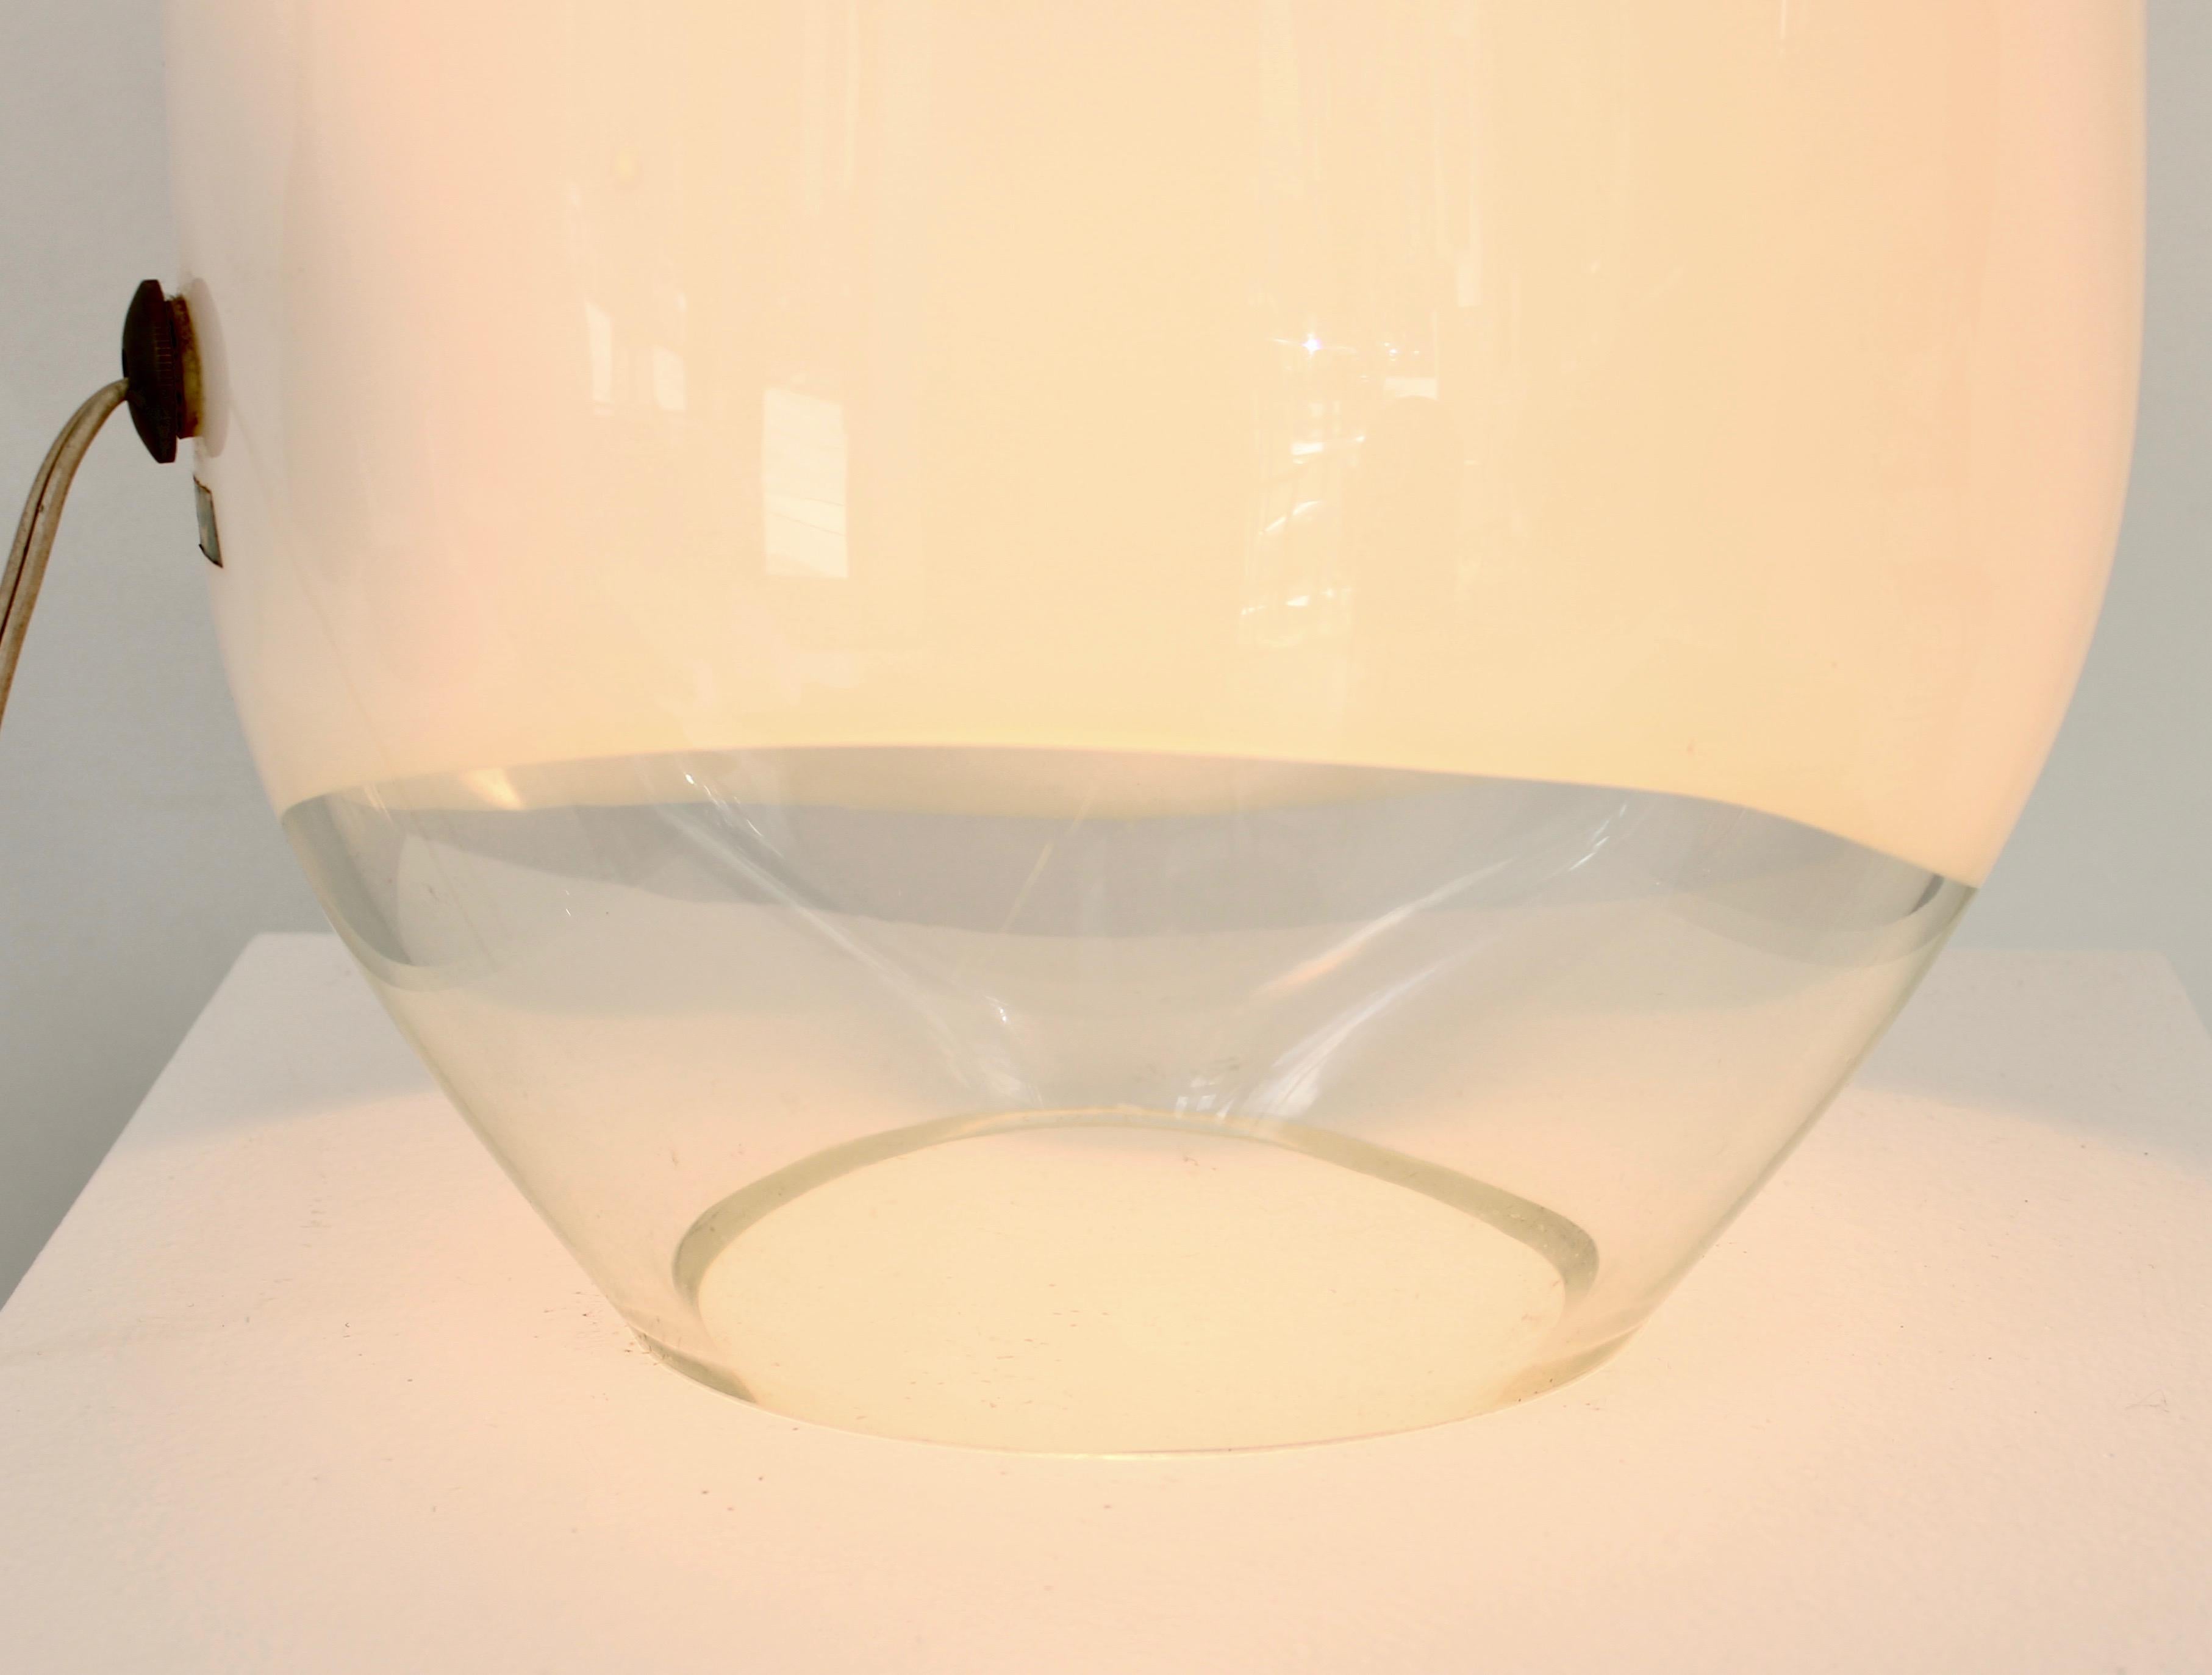 Vistosi Munega Murano Italian Blown Glass Table Lamp Gino Vistosi 1978 1